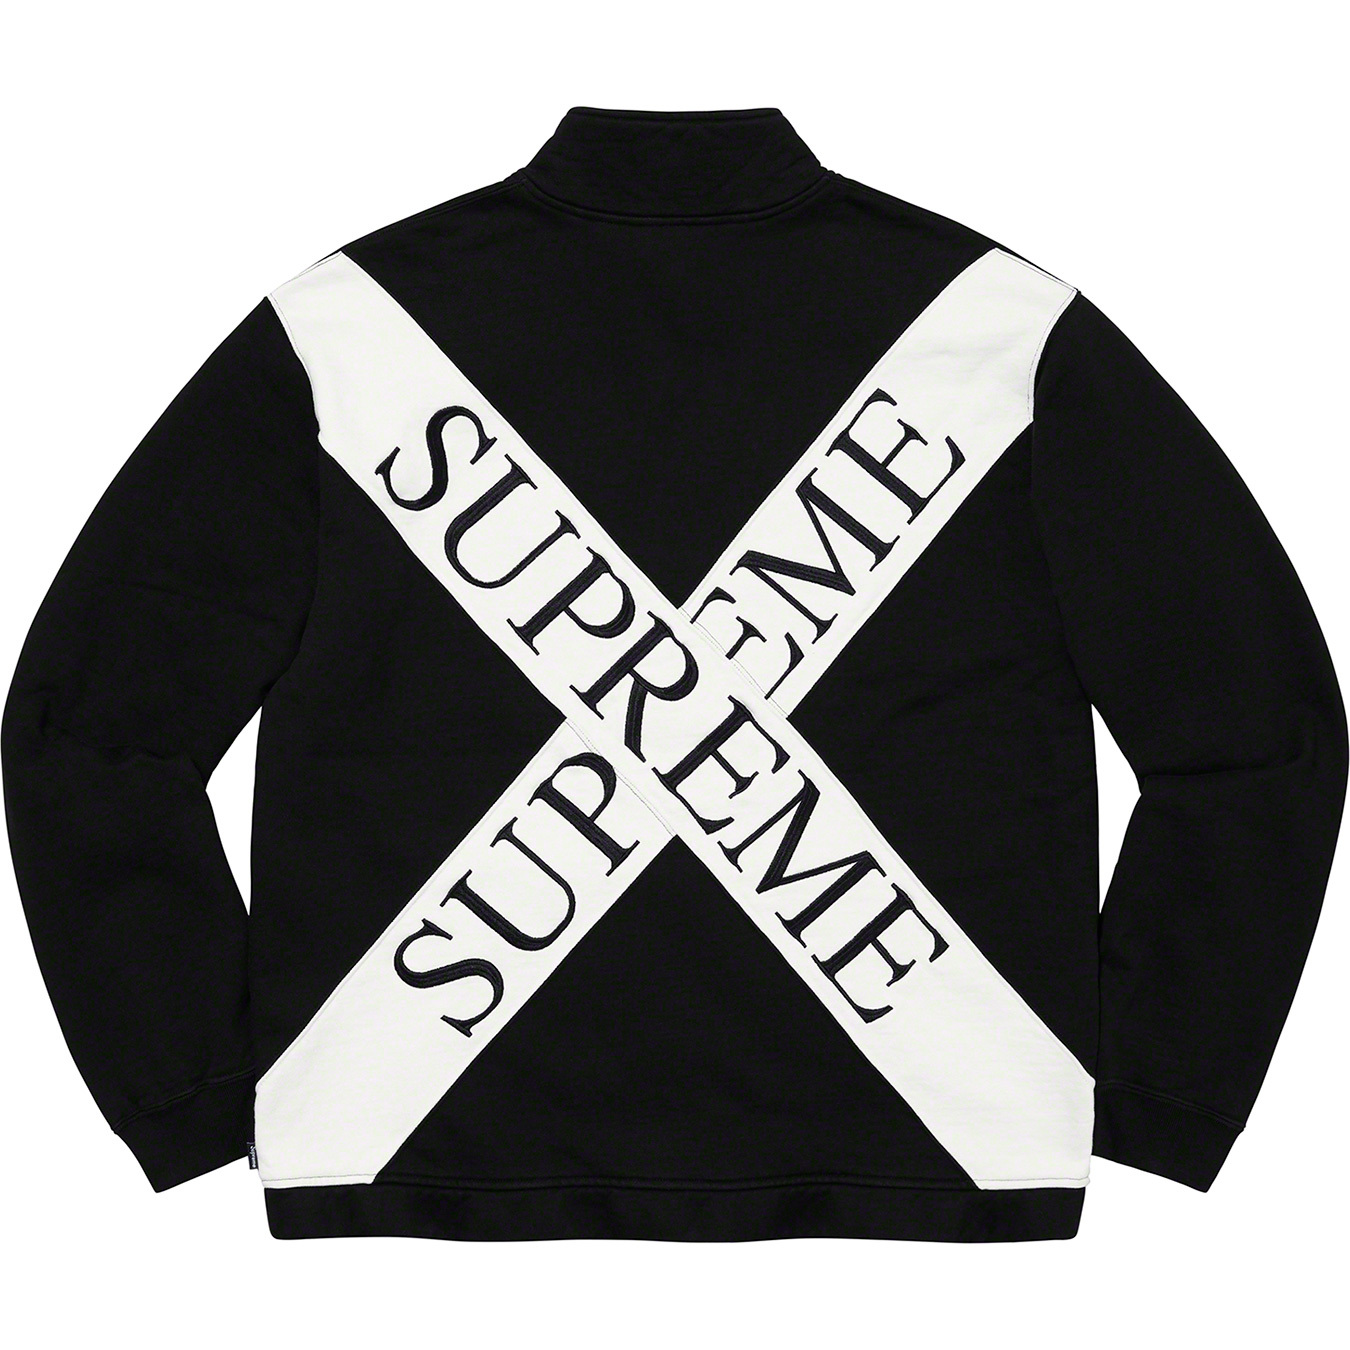 Supreme Cross Half Zip Sweatshirt L Grey